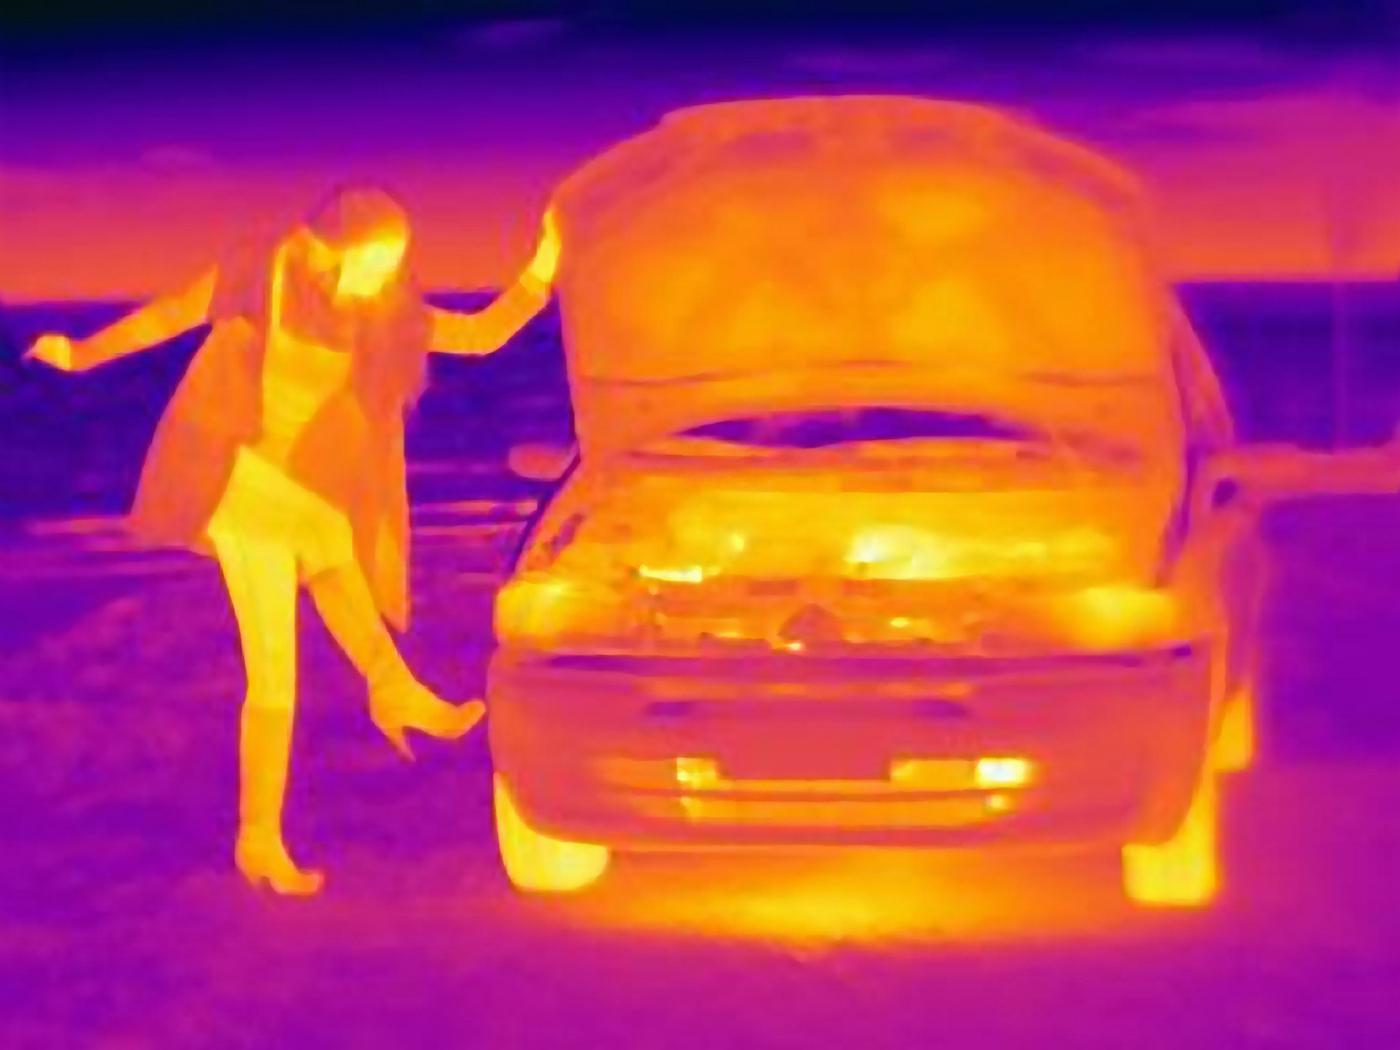 تصویر حرارتی زن در حال لگد زدن به لاستیک خودرو در کنار جاده.  همسویی سرمایه گذار بنیانگذار